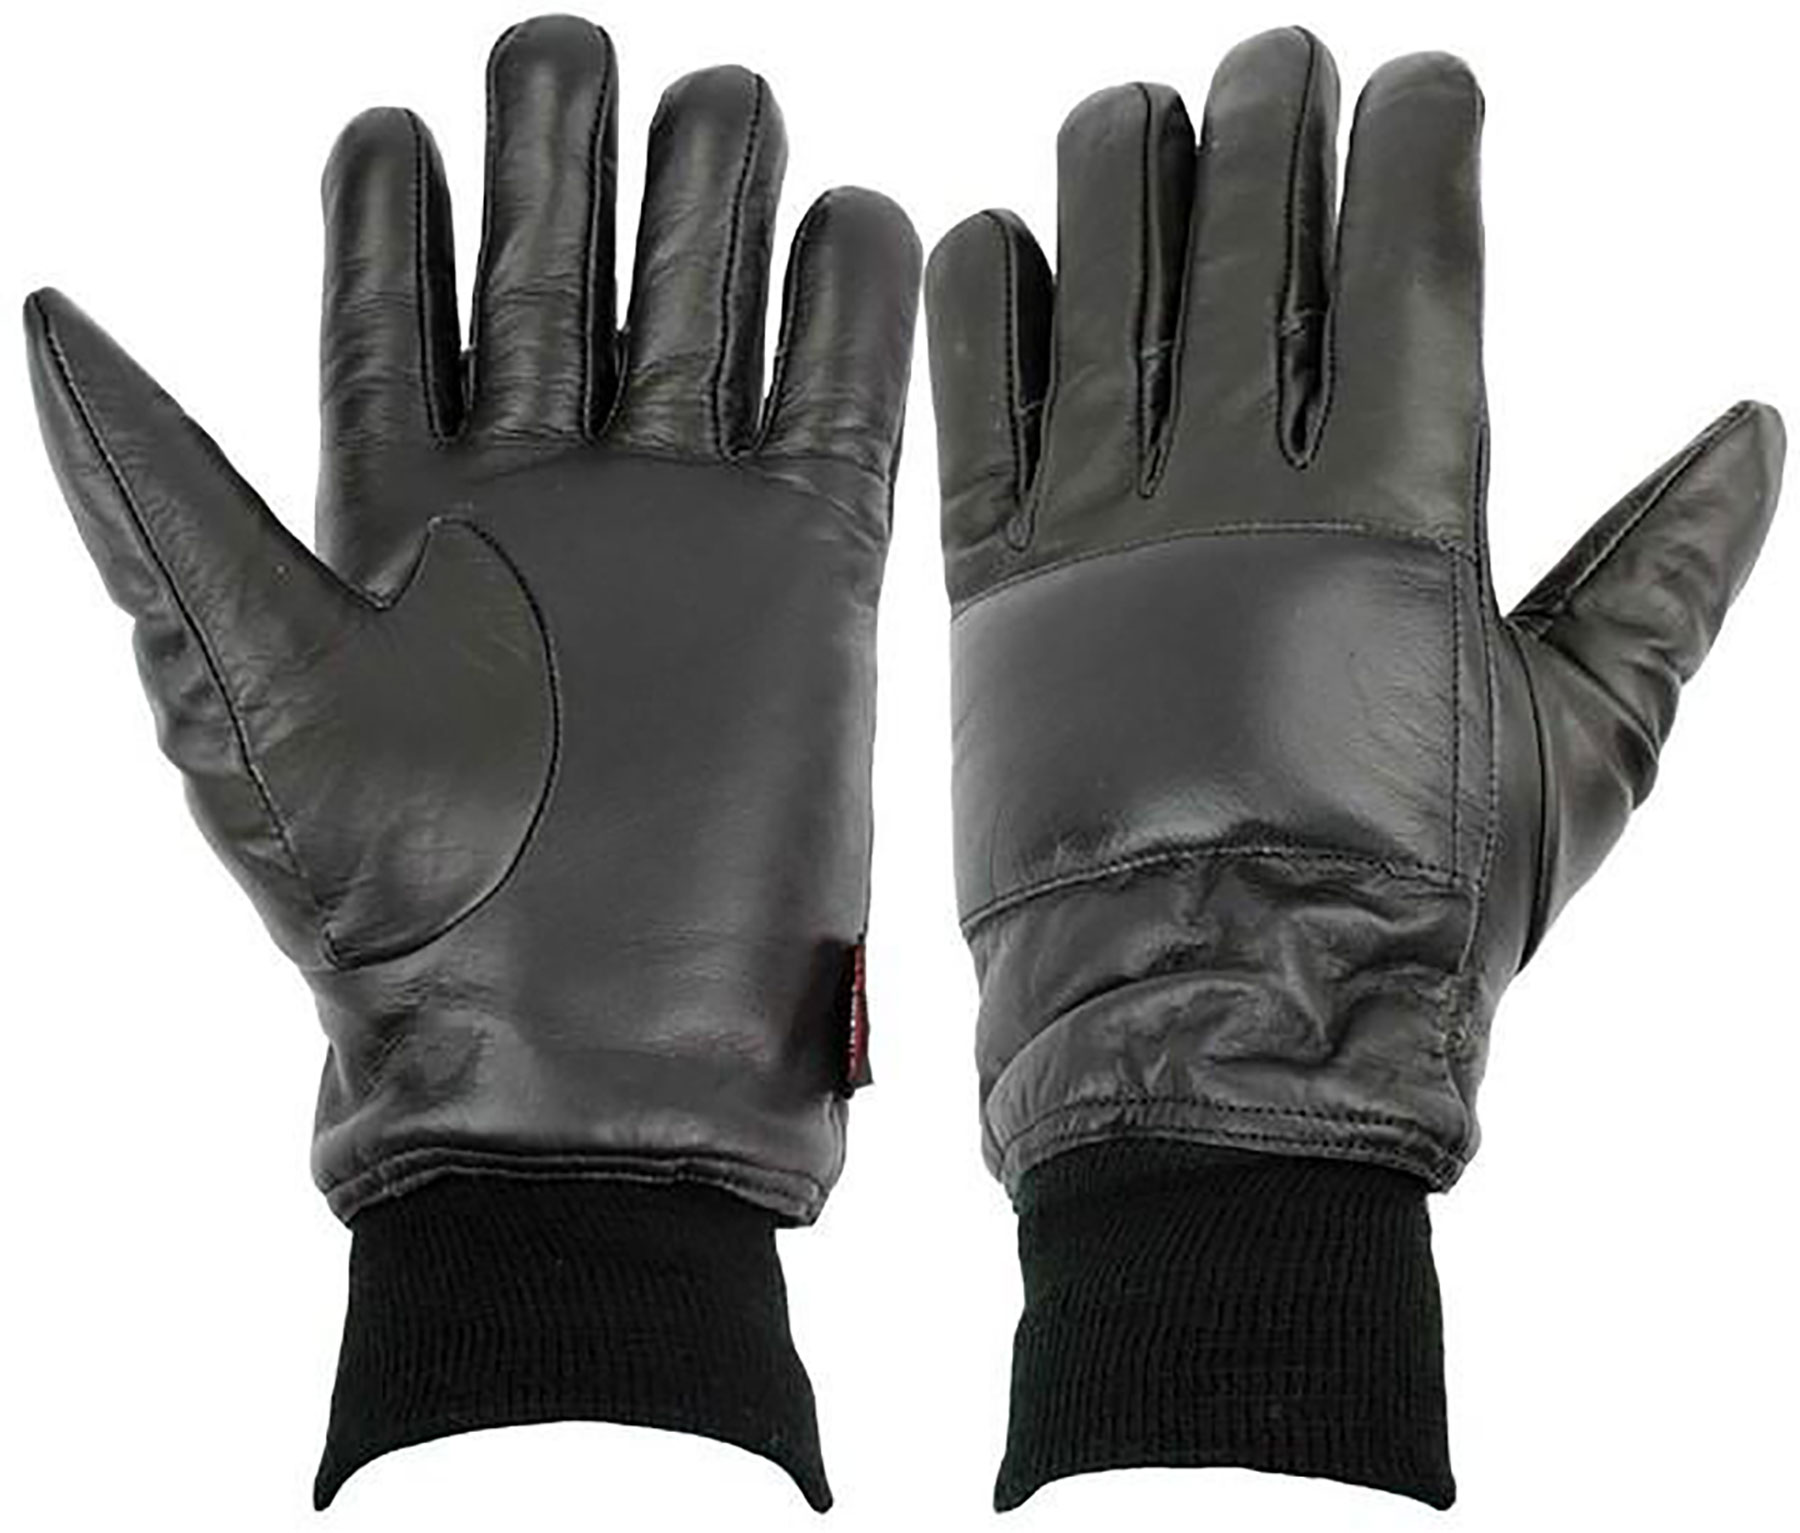 NI-Gloves